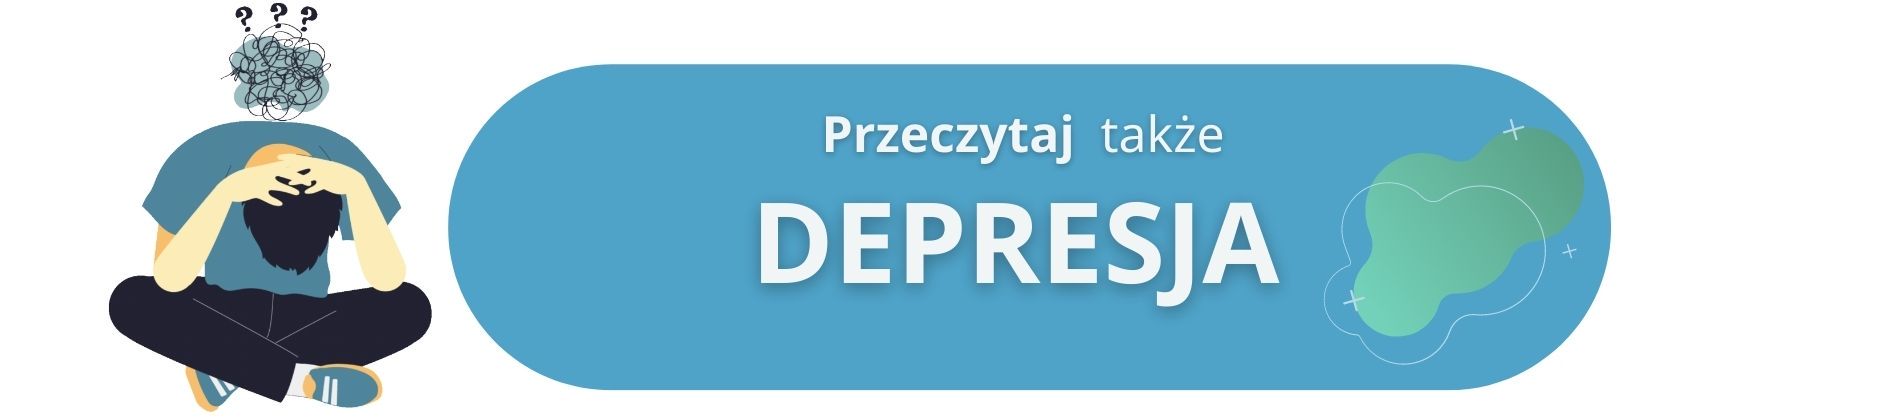 depresja - leczenie i psychoterapia